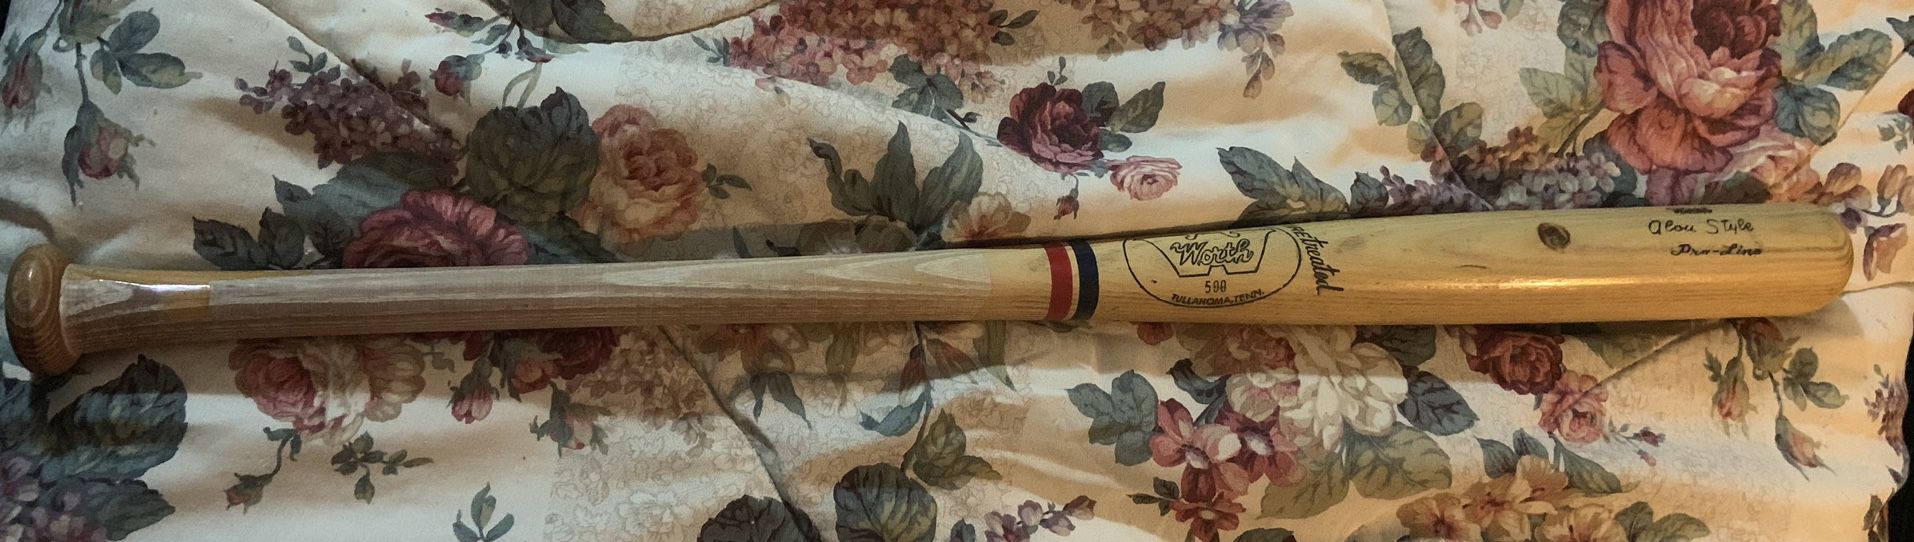 Vintage Baseball Bat. Wood Worth Alou styles Bat